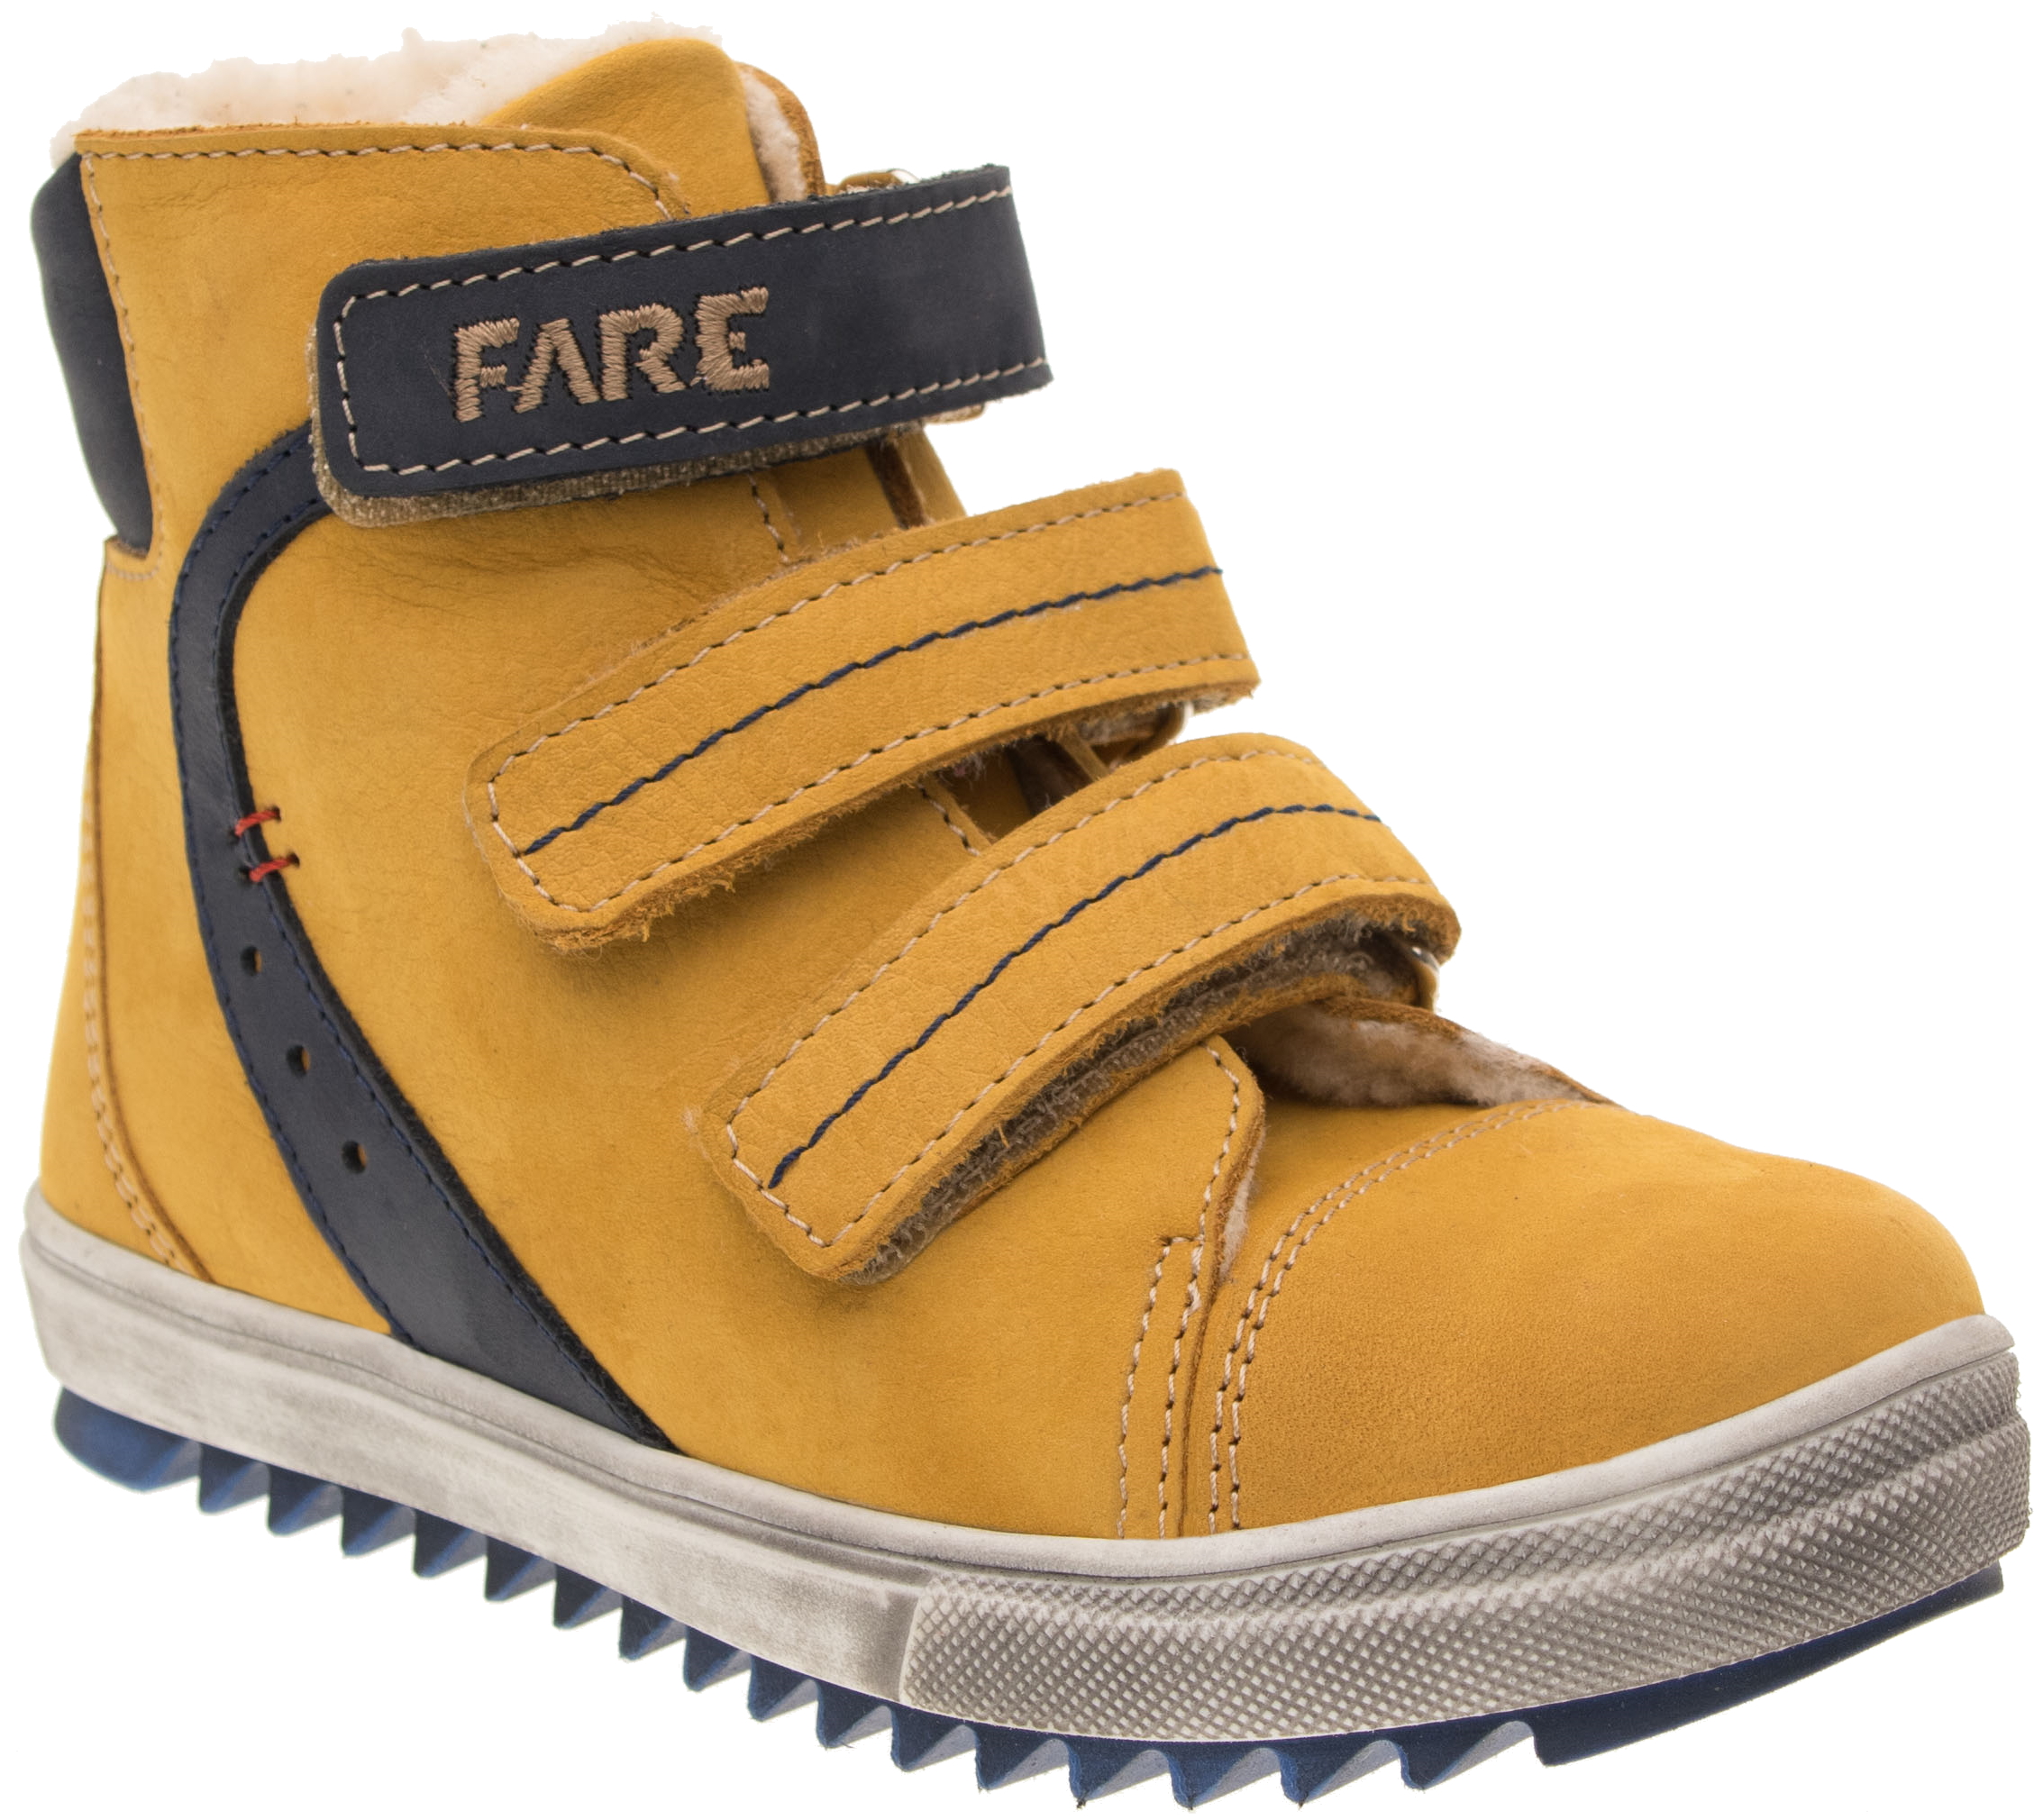 Dětské zimní kotníkové boty Fare 841281 žluté Velikost: 27 (EU)